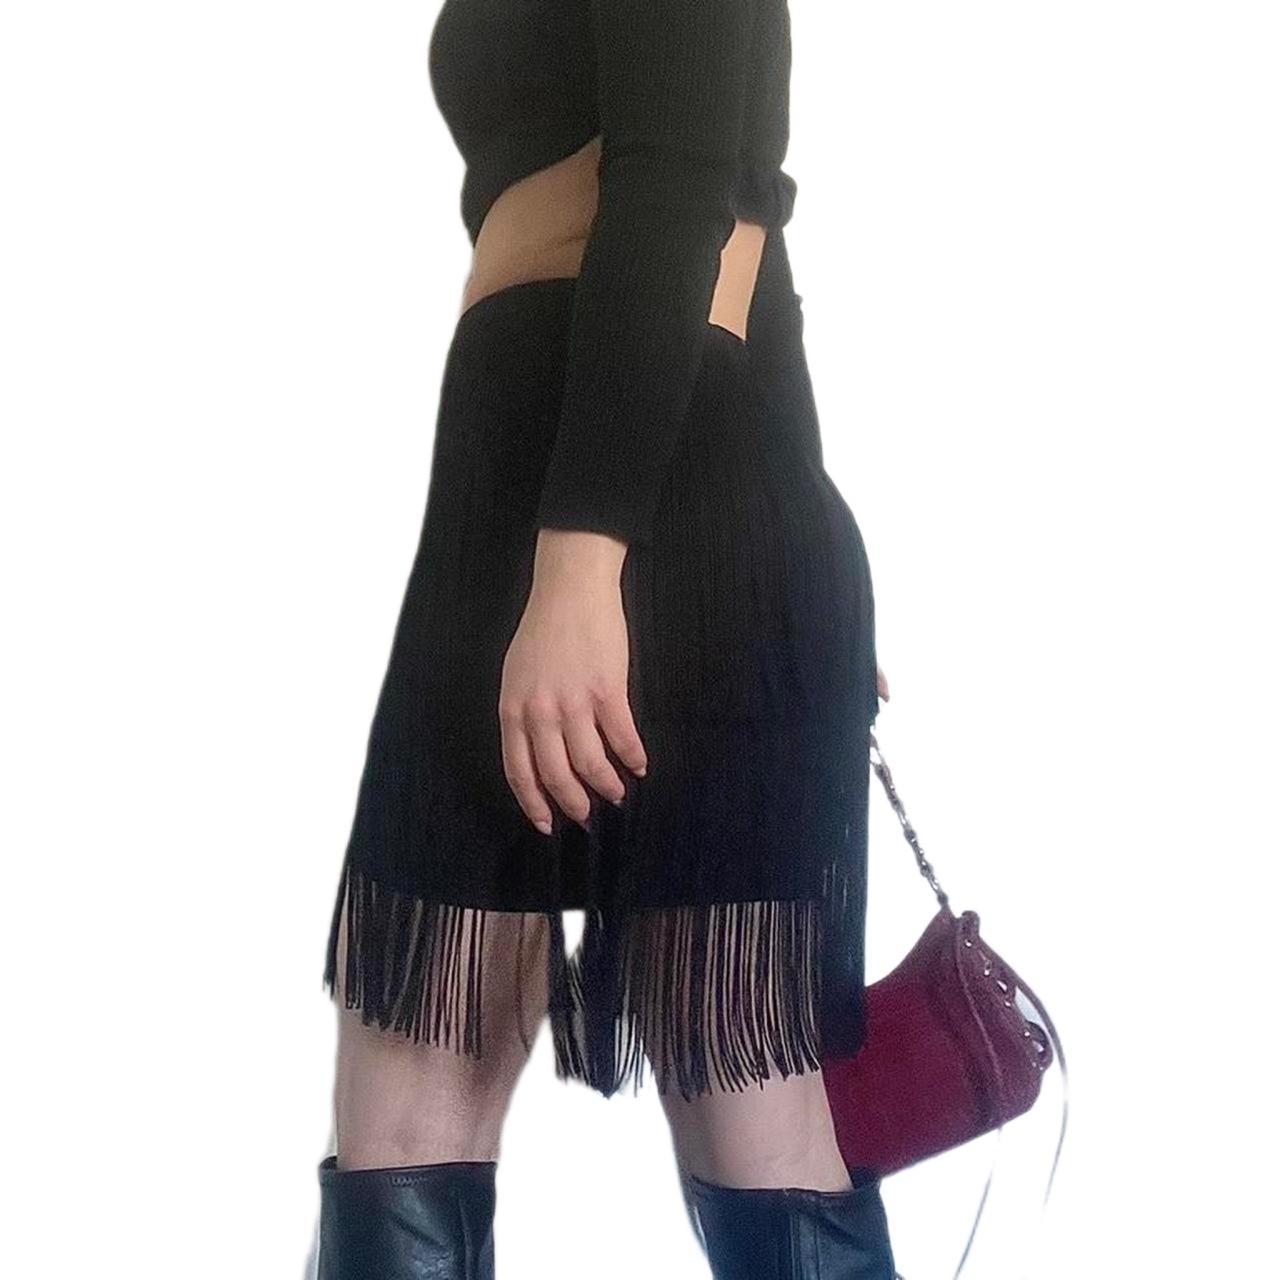 Fringe Mini Skirt from Bebe BRAND NEW Versatile... - Depop